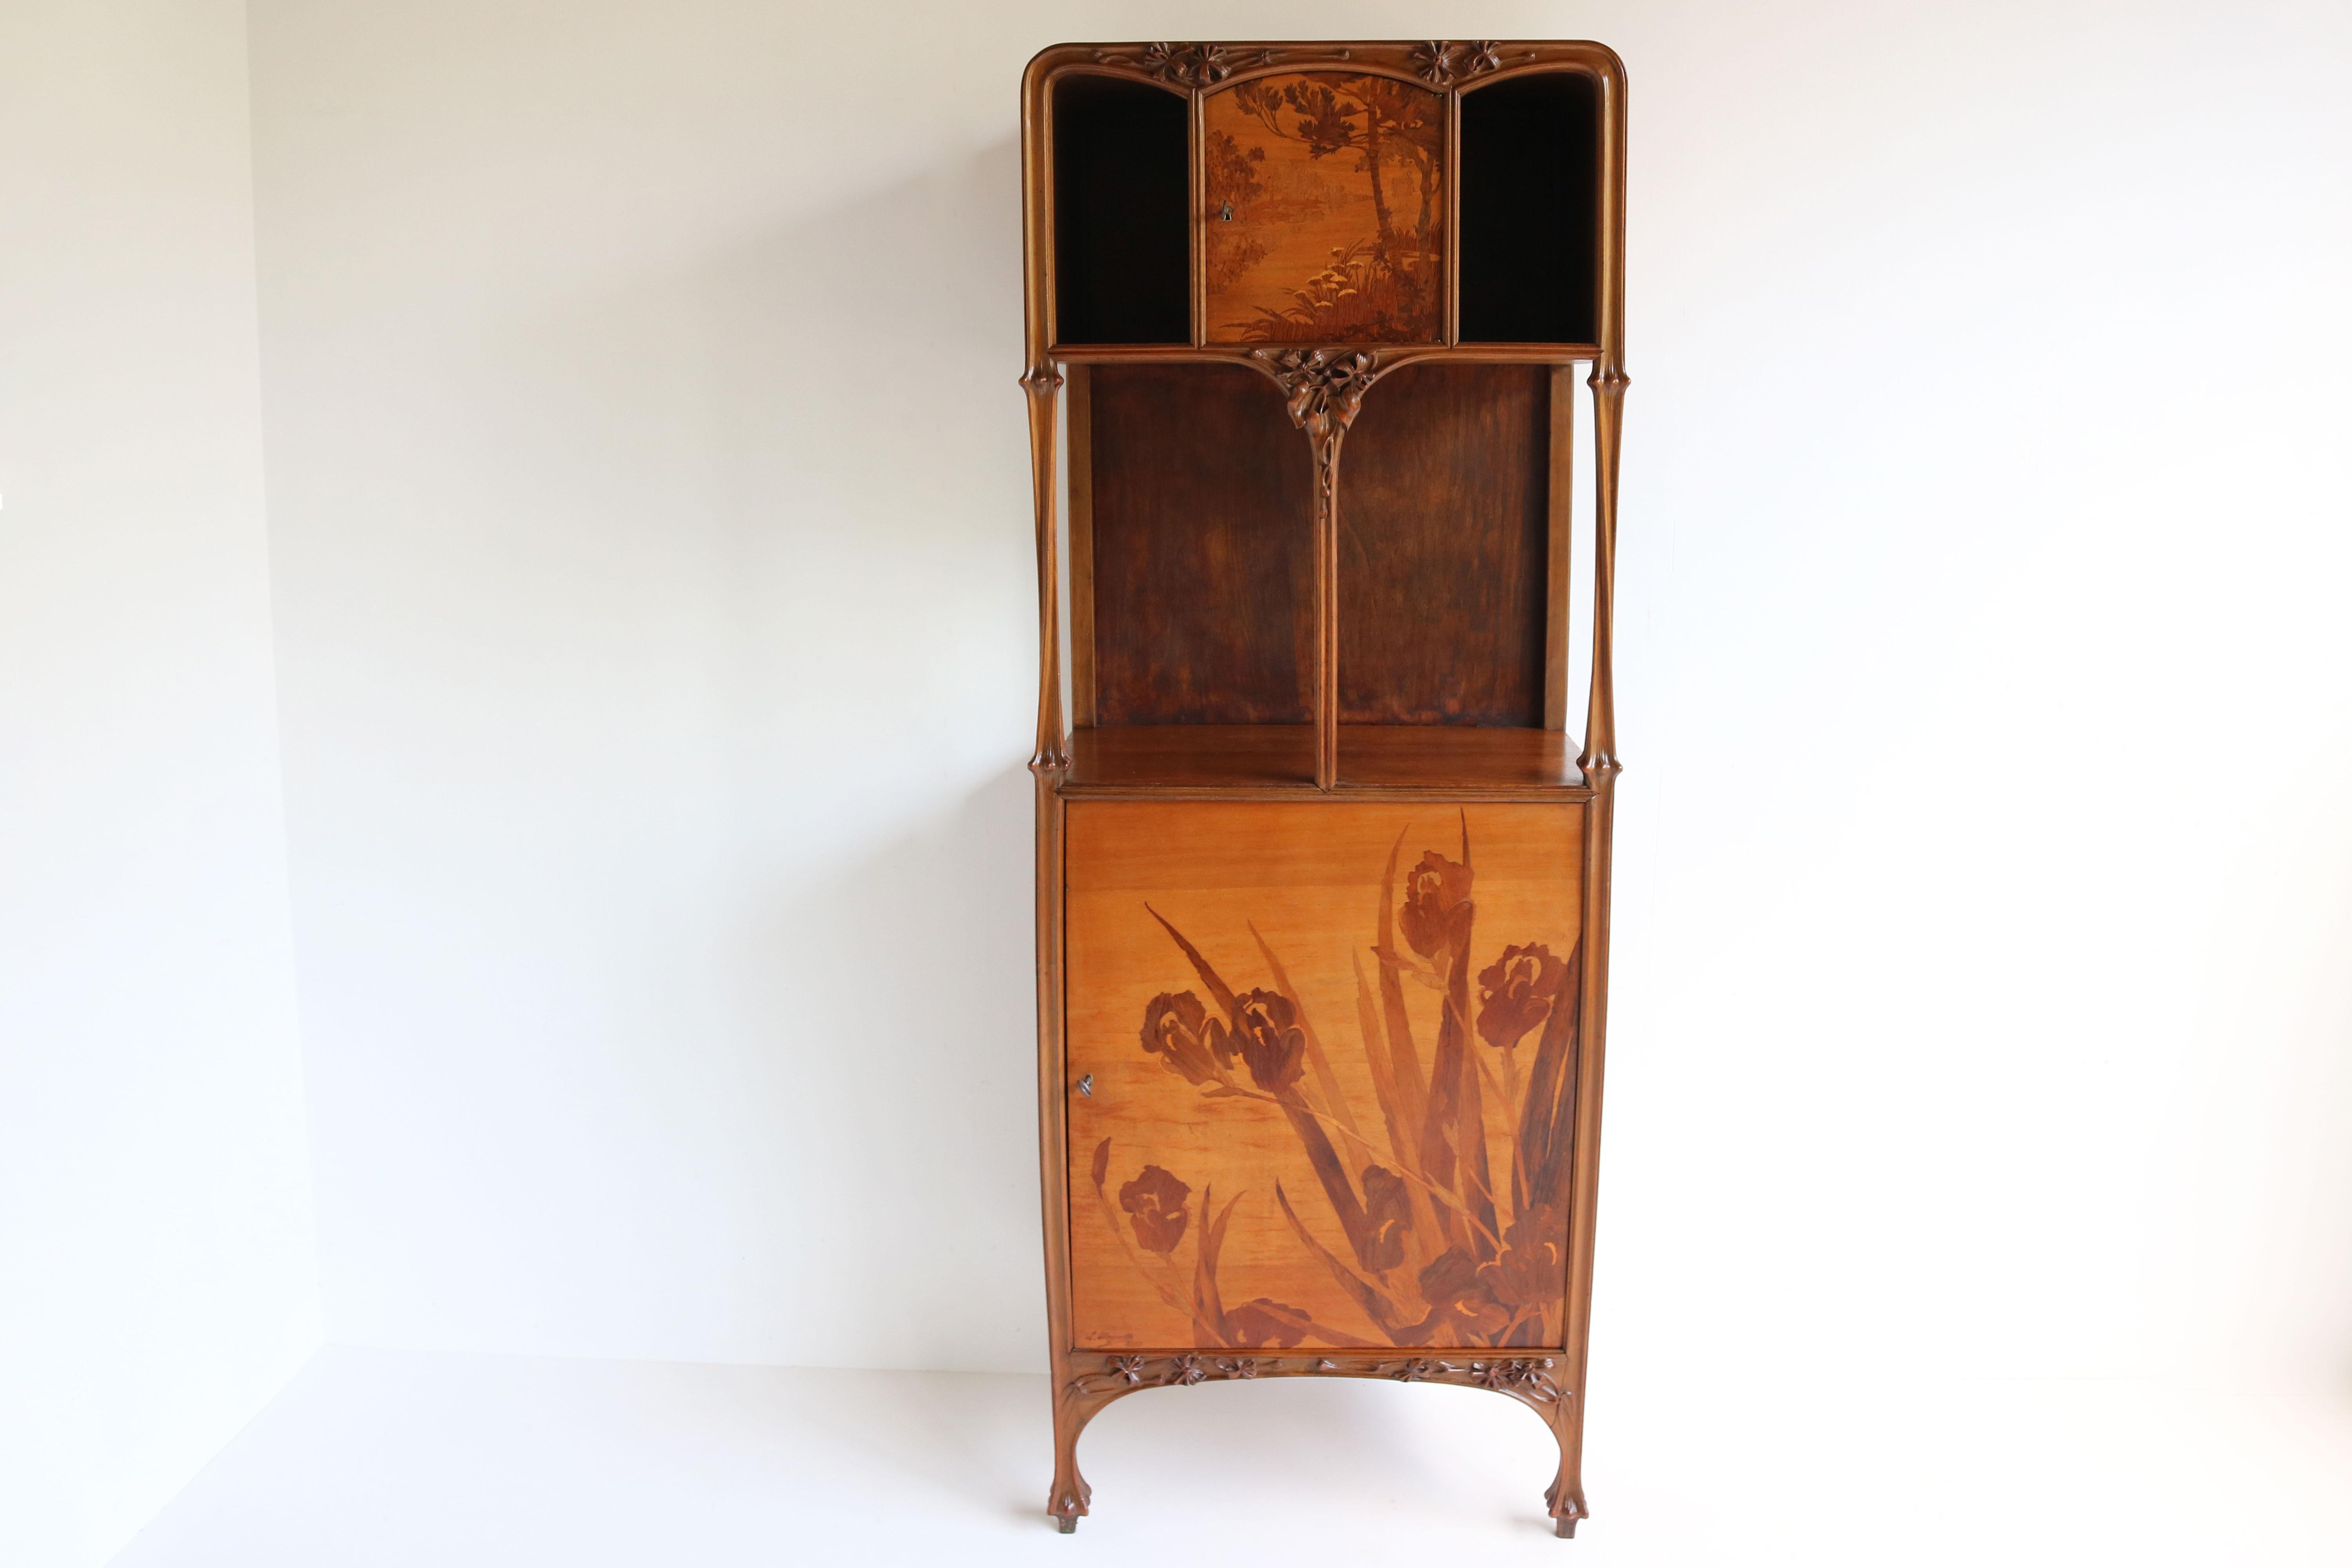 Walnut Exceptional Art Nouveau Cabinet by Louis Majorelle 1900 French Antique Nancy For Sale